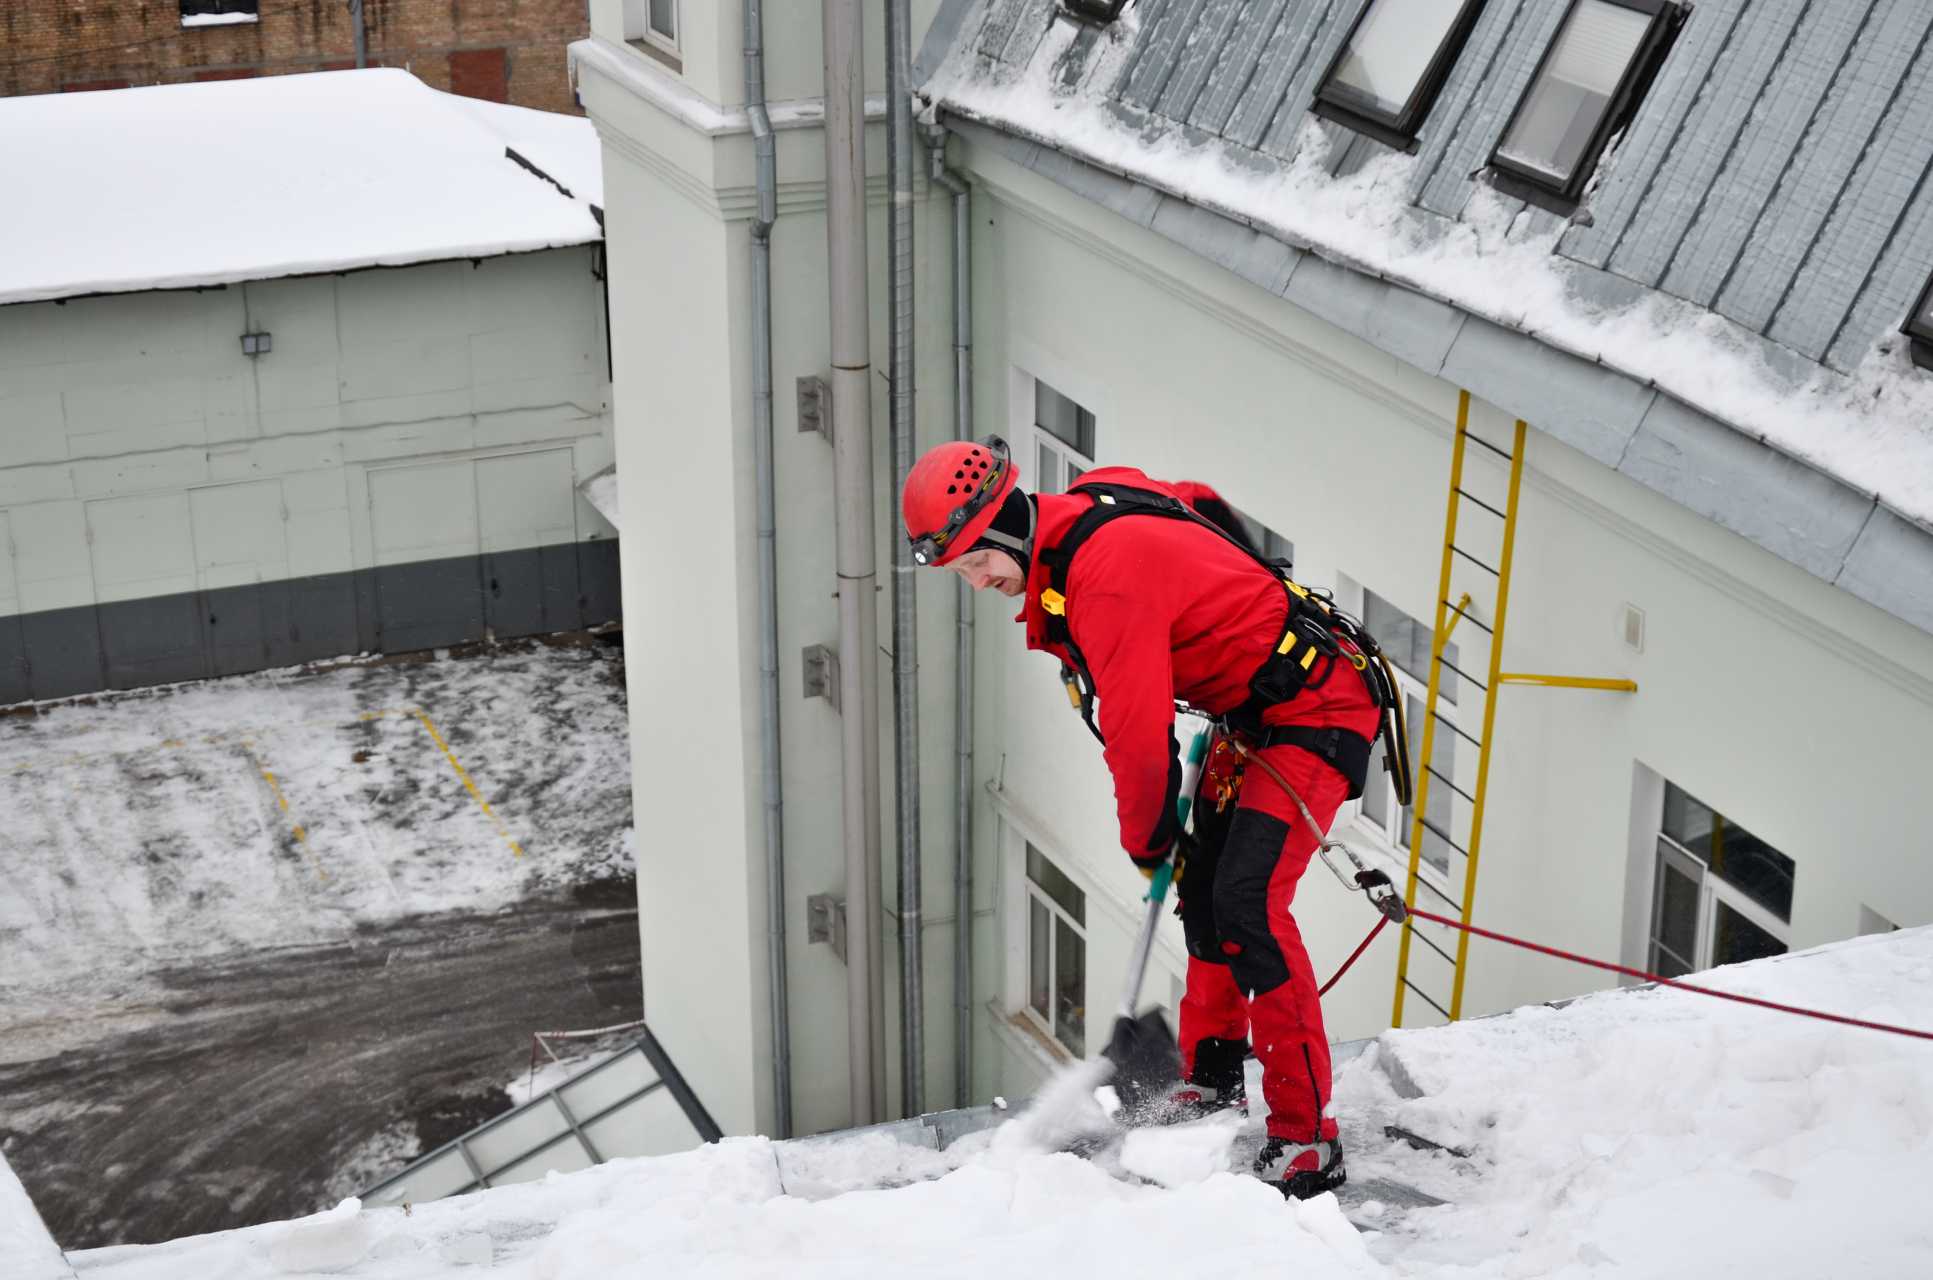 Государственная инспекция труда в Белгородской области обращает внимание работодателей на необходимость максимального усиления мер безопасности при организации работ по очистке от снега и наледи.